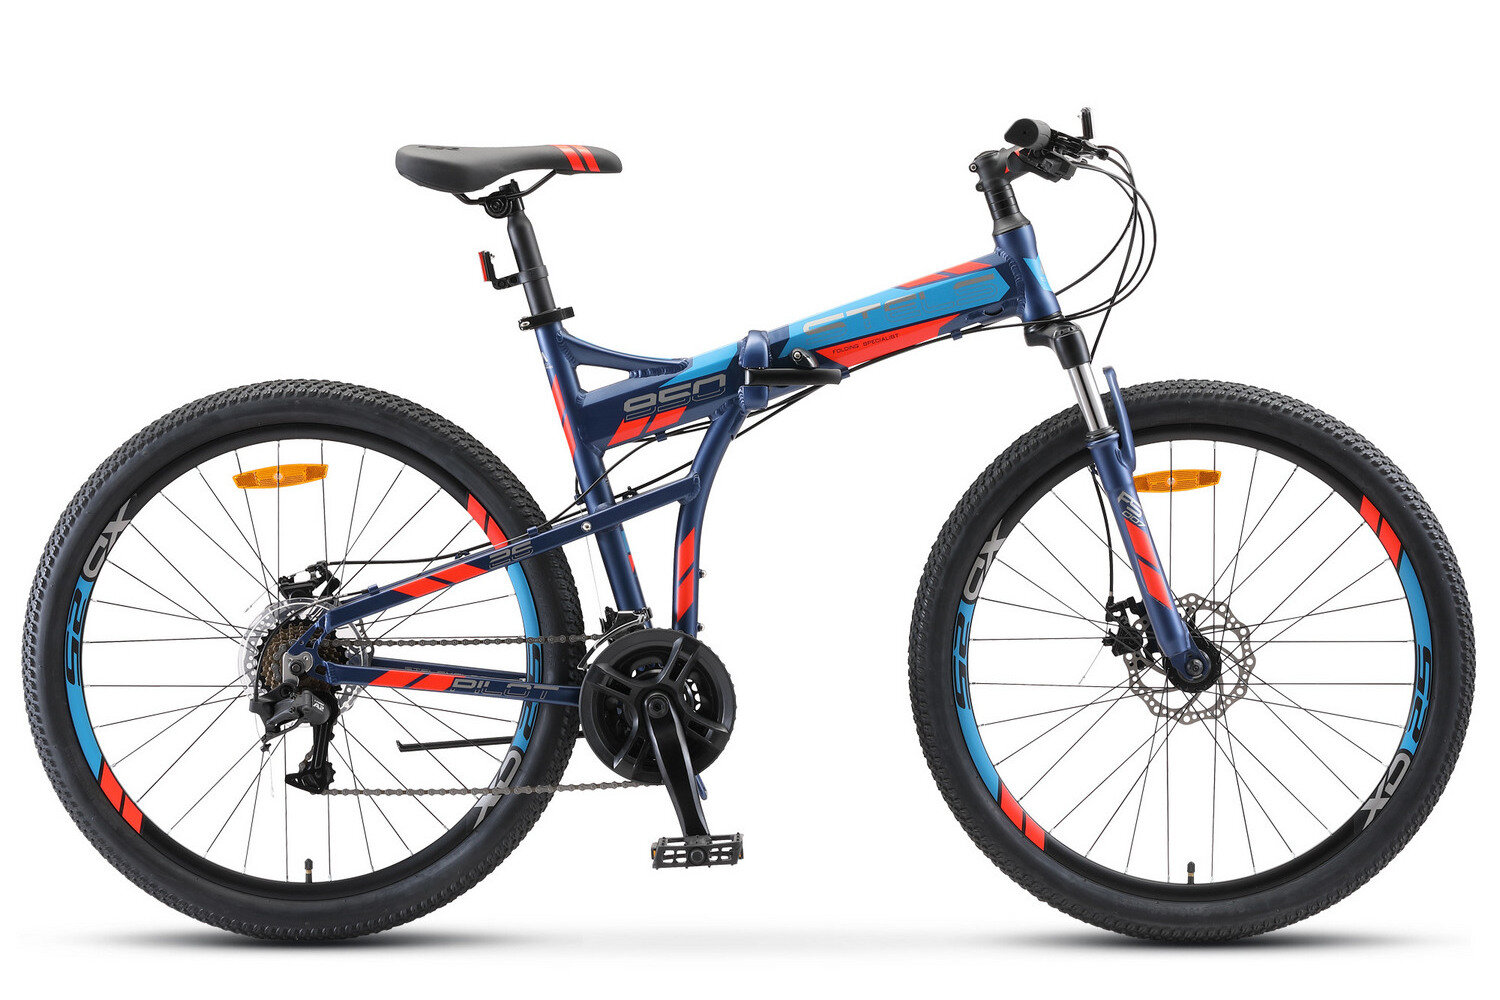 Складной велосипед Stels Pilot 950 MD 26 V011, год 2020, ростовка 17,5, цвет Синий